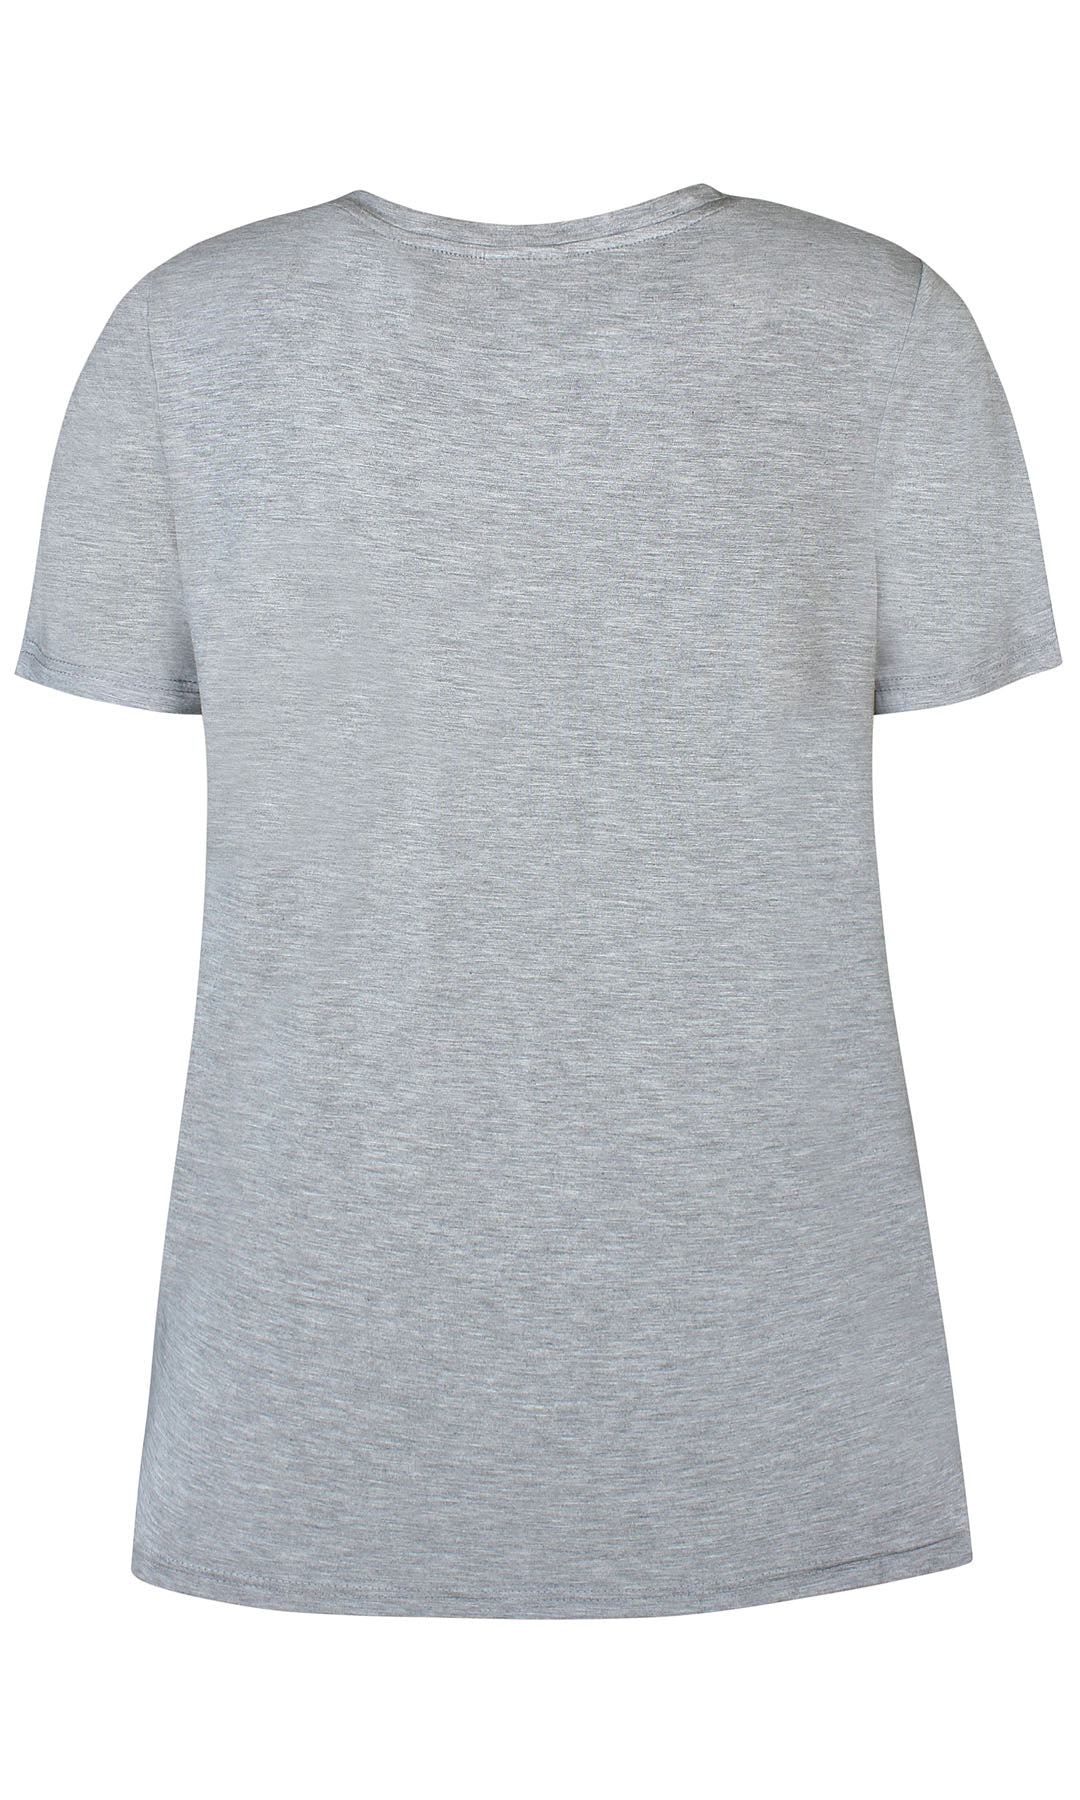 Case 796 - T-shirt - Grå